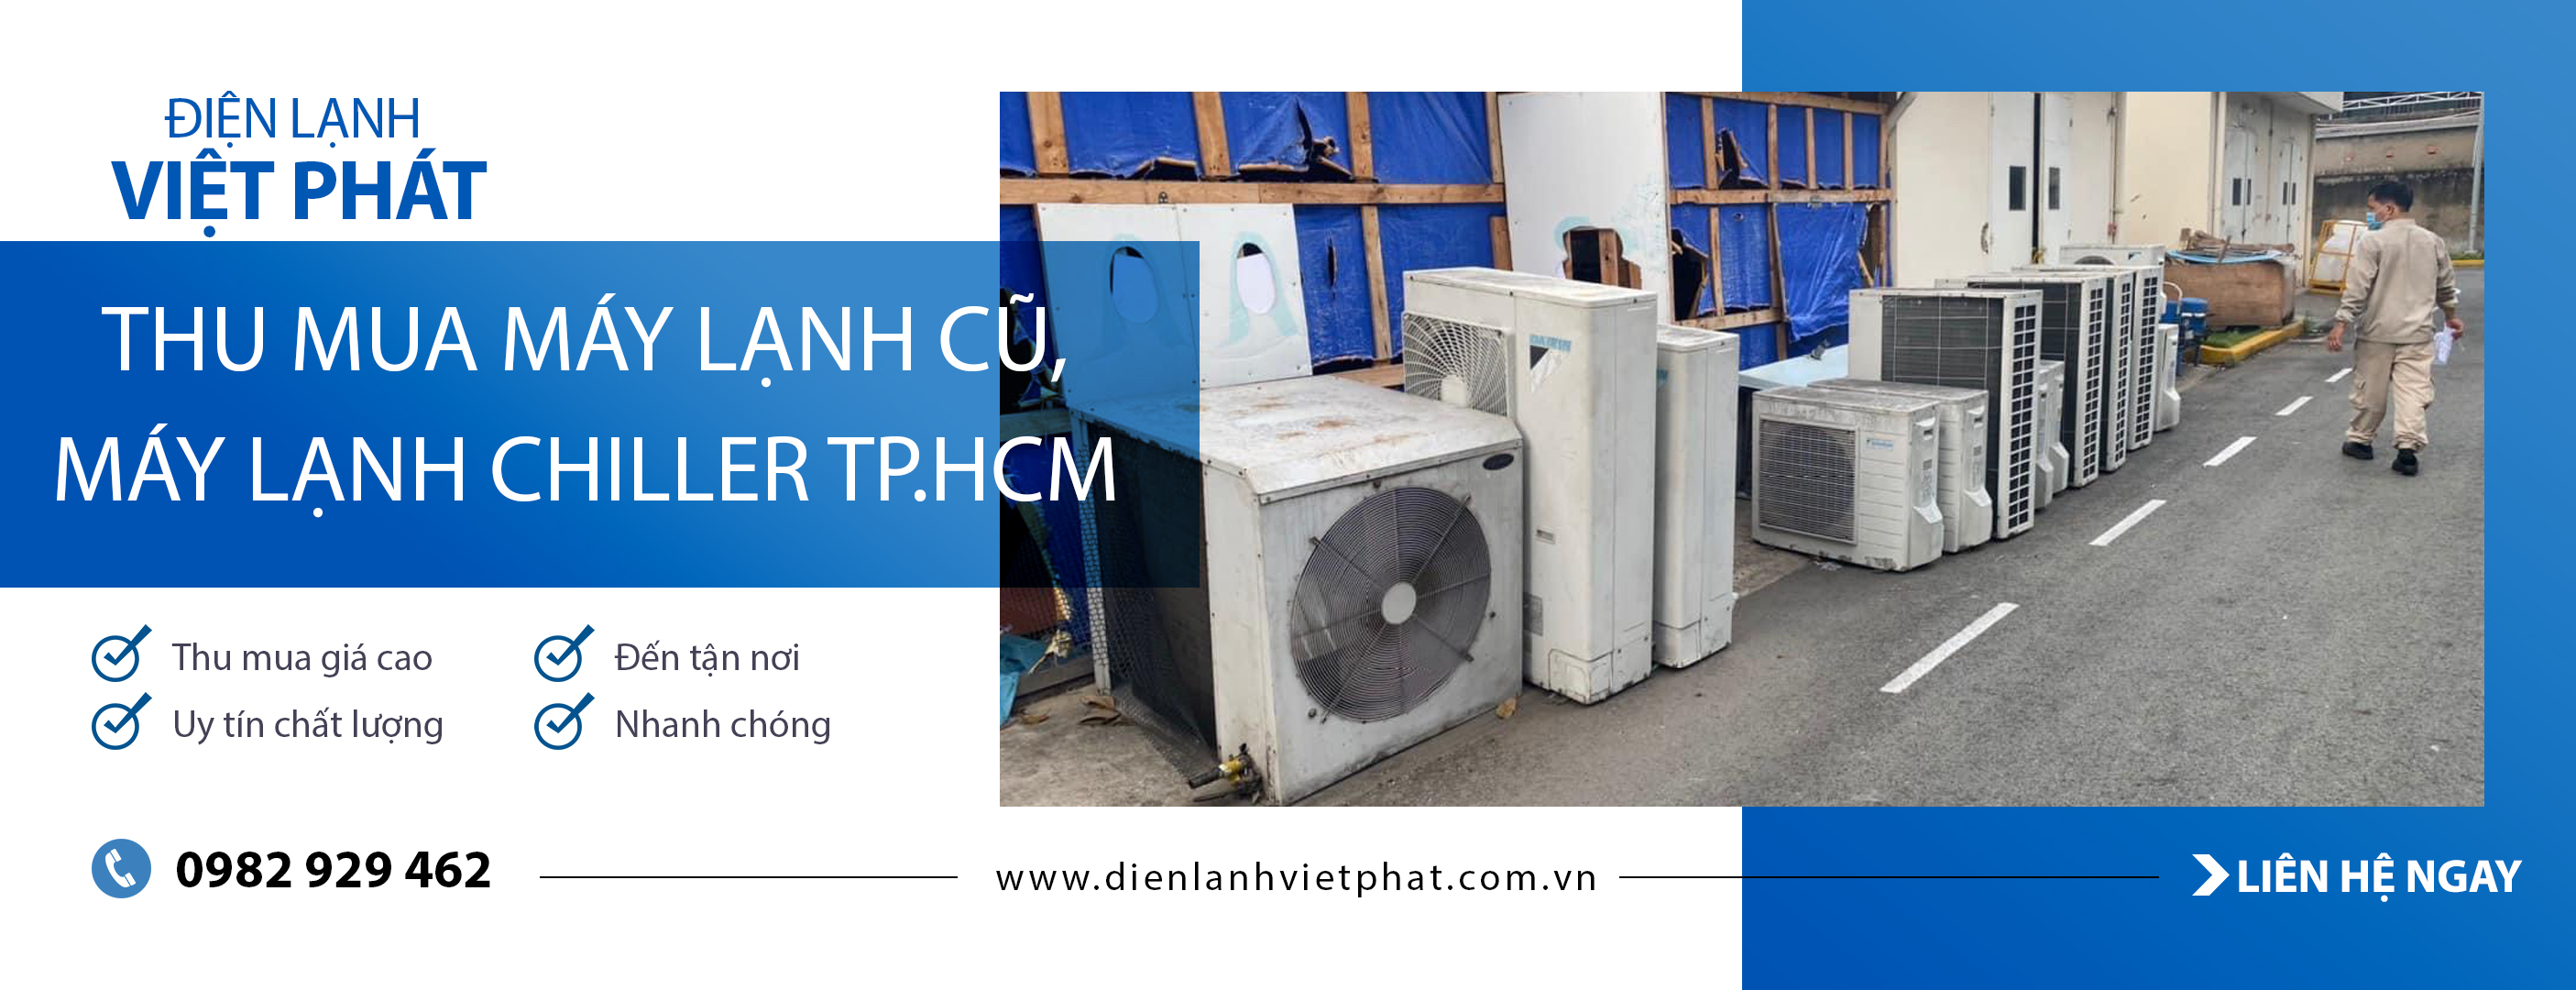 Điện lạnh Việt Phát - Dịch vụ thu mua máy lạnh cũ tại Dĩ An